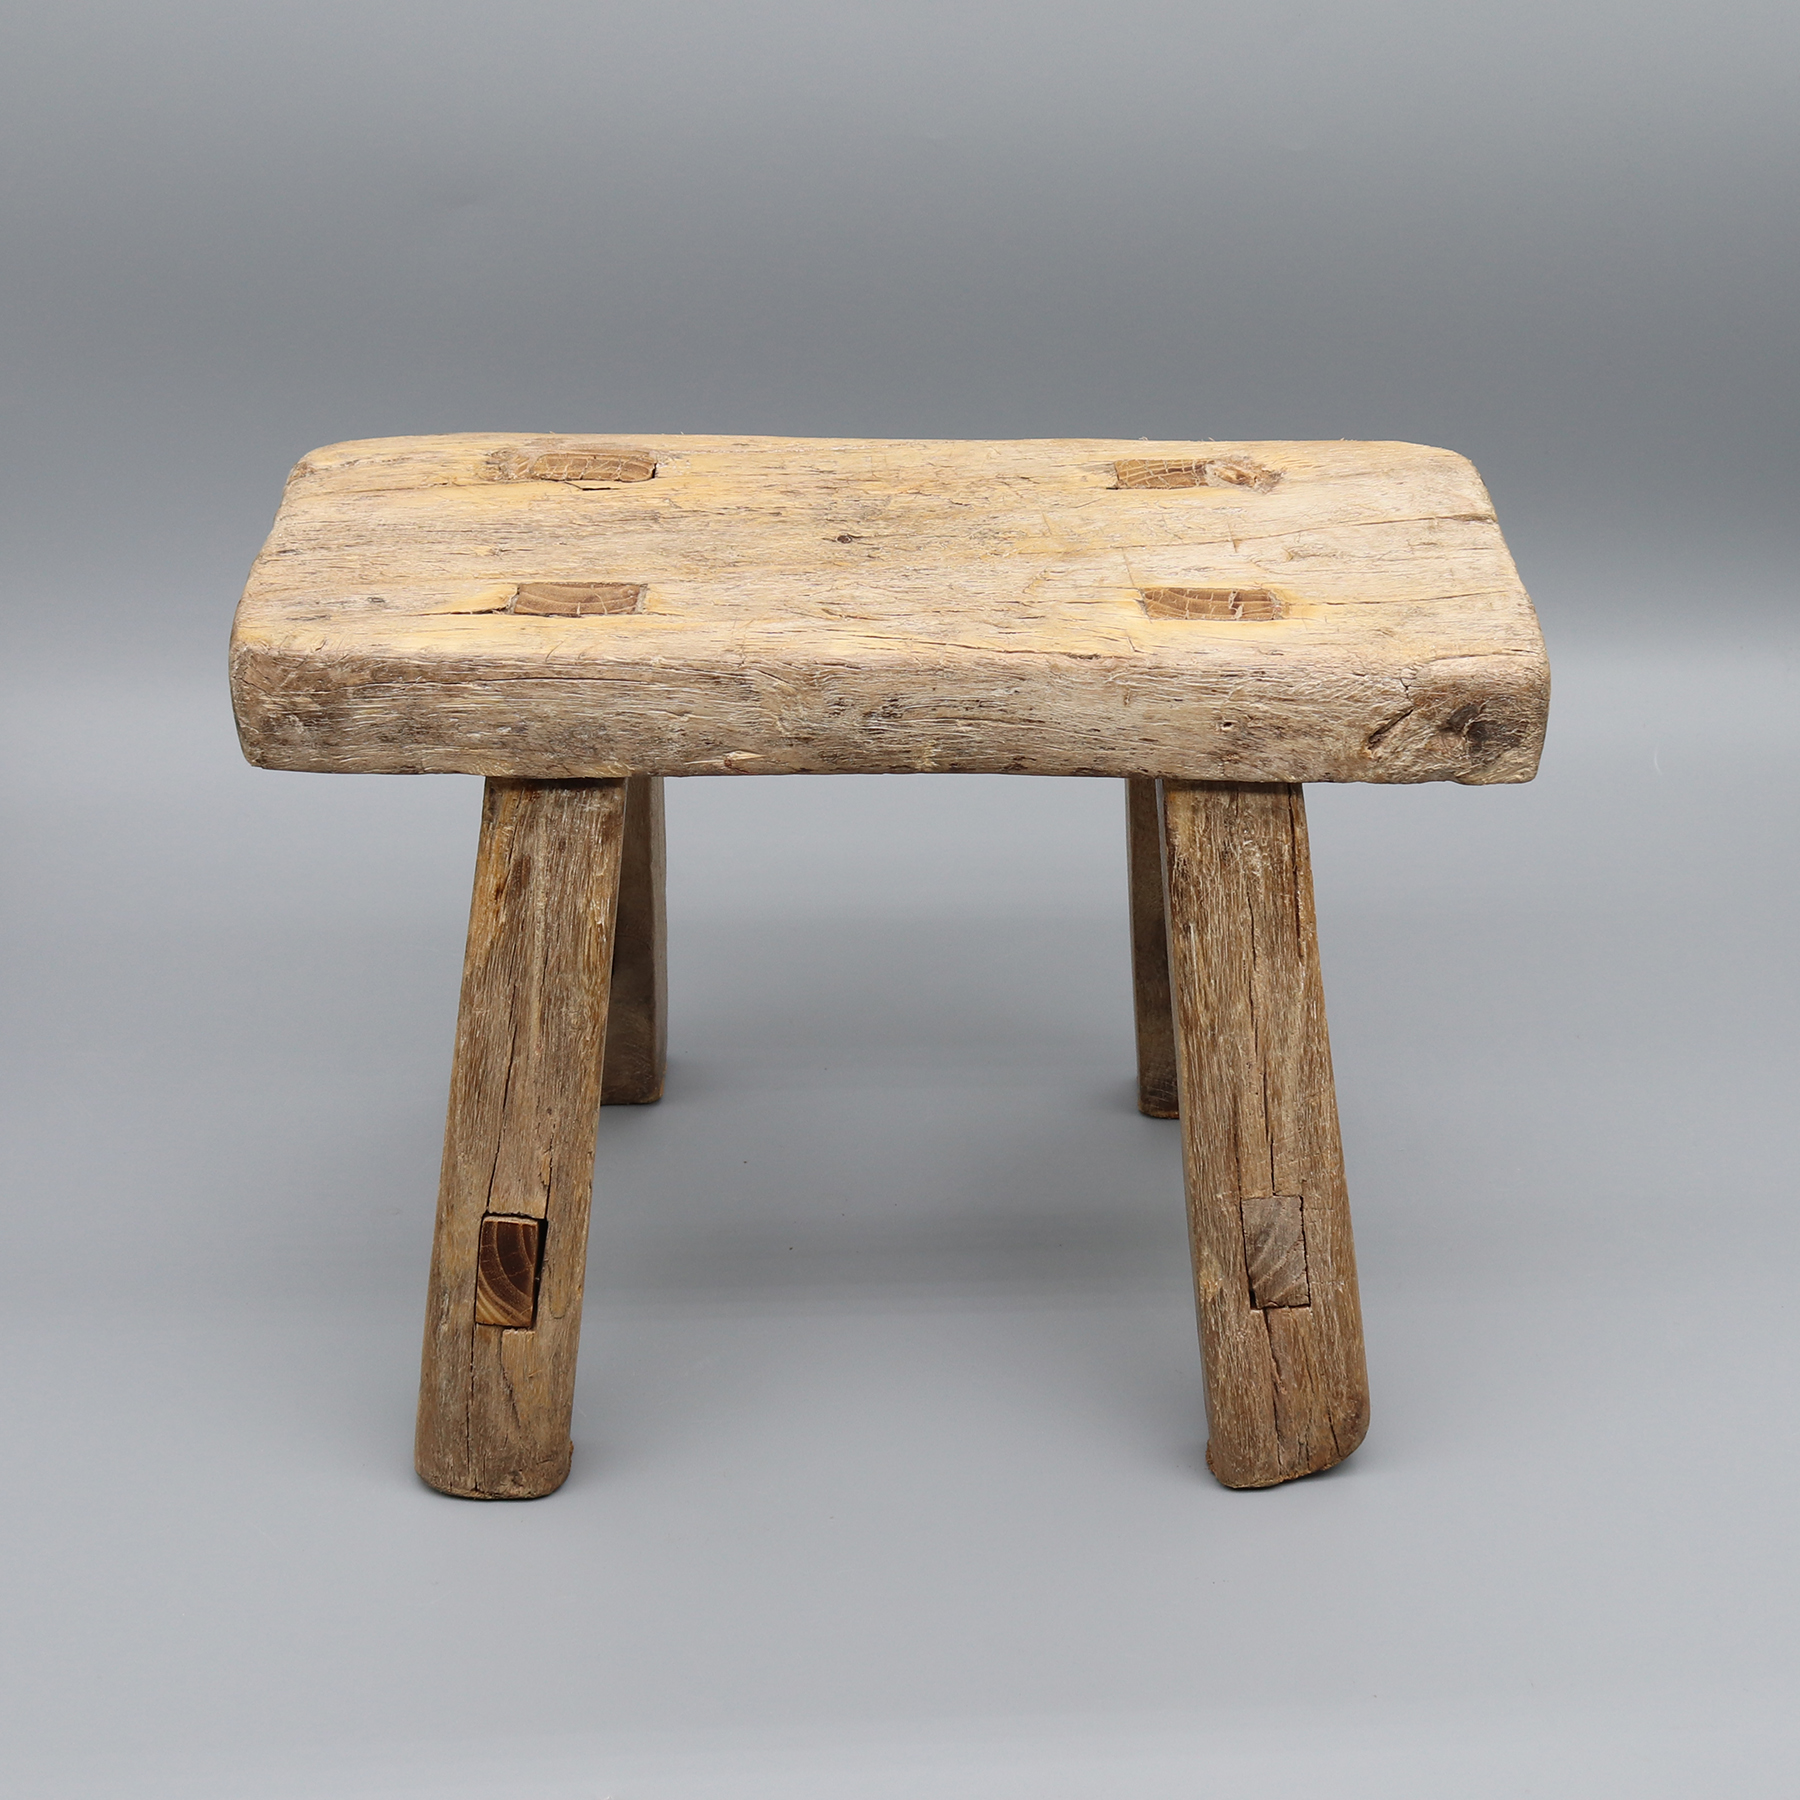 Banqueta de madeira antiga, encaixe e espiga articulada, mesa pequena, suporte para plantas, madeira maciça